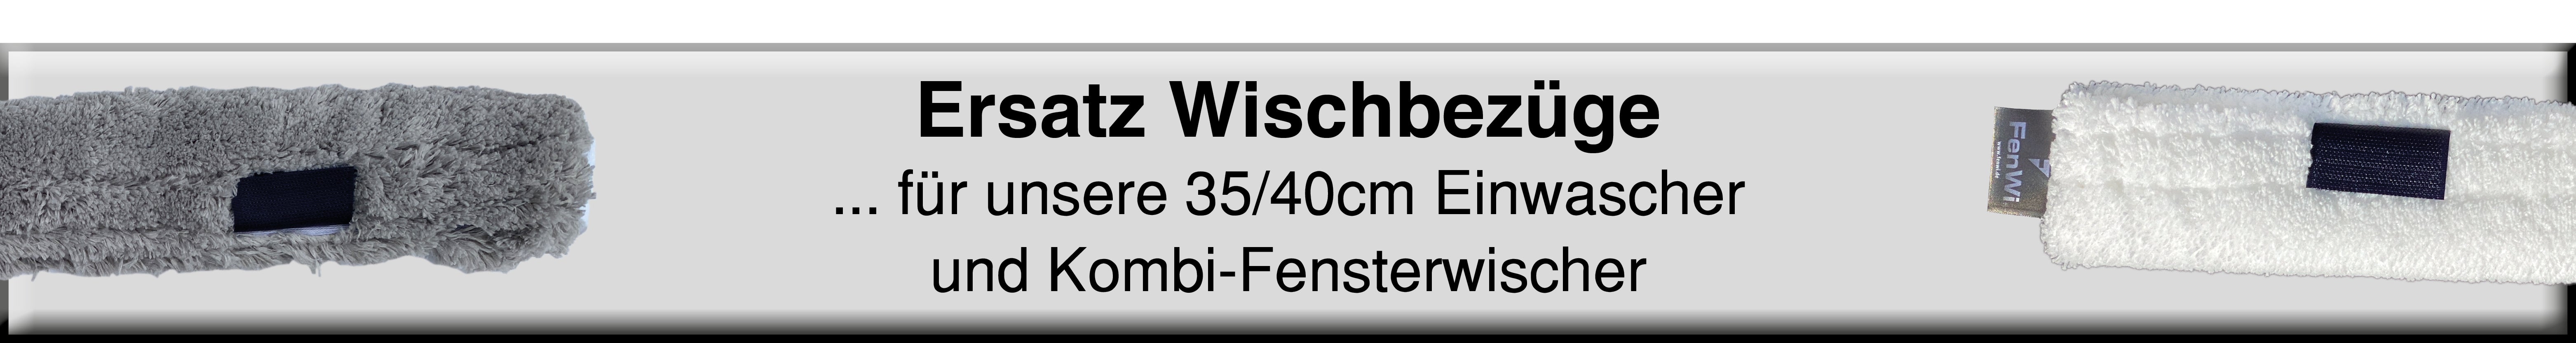  FenWi Profi Kombi Fensterwischer 35/40cm mit Fensterabzieher &  Einwascher Microfaser-Wischbezug und 2X Gummilippe (hart & weich)